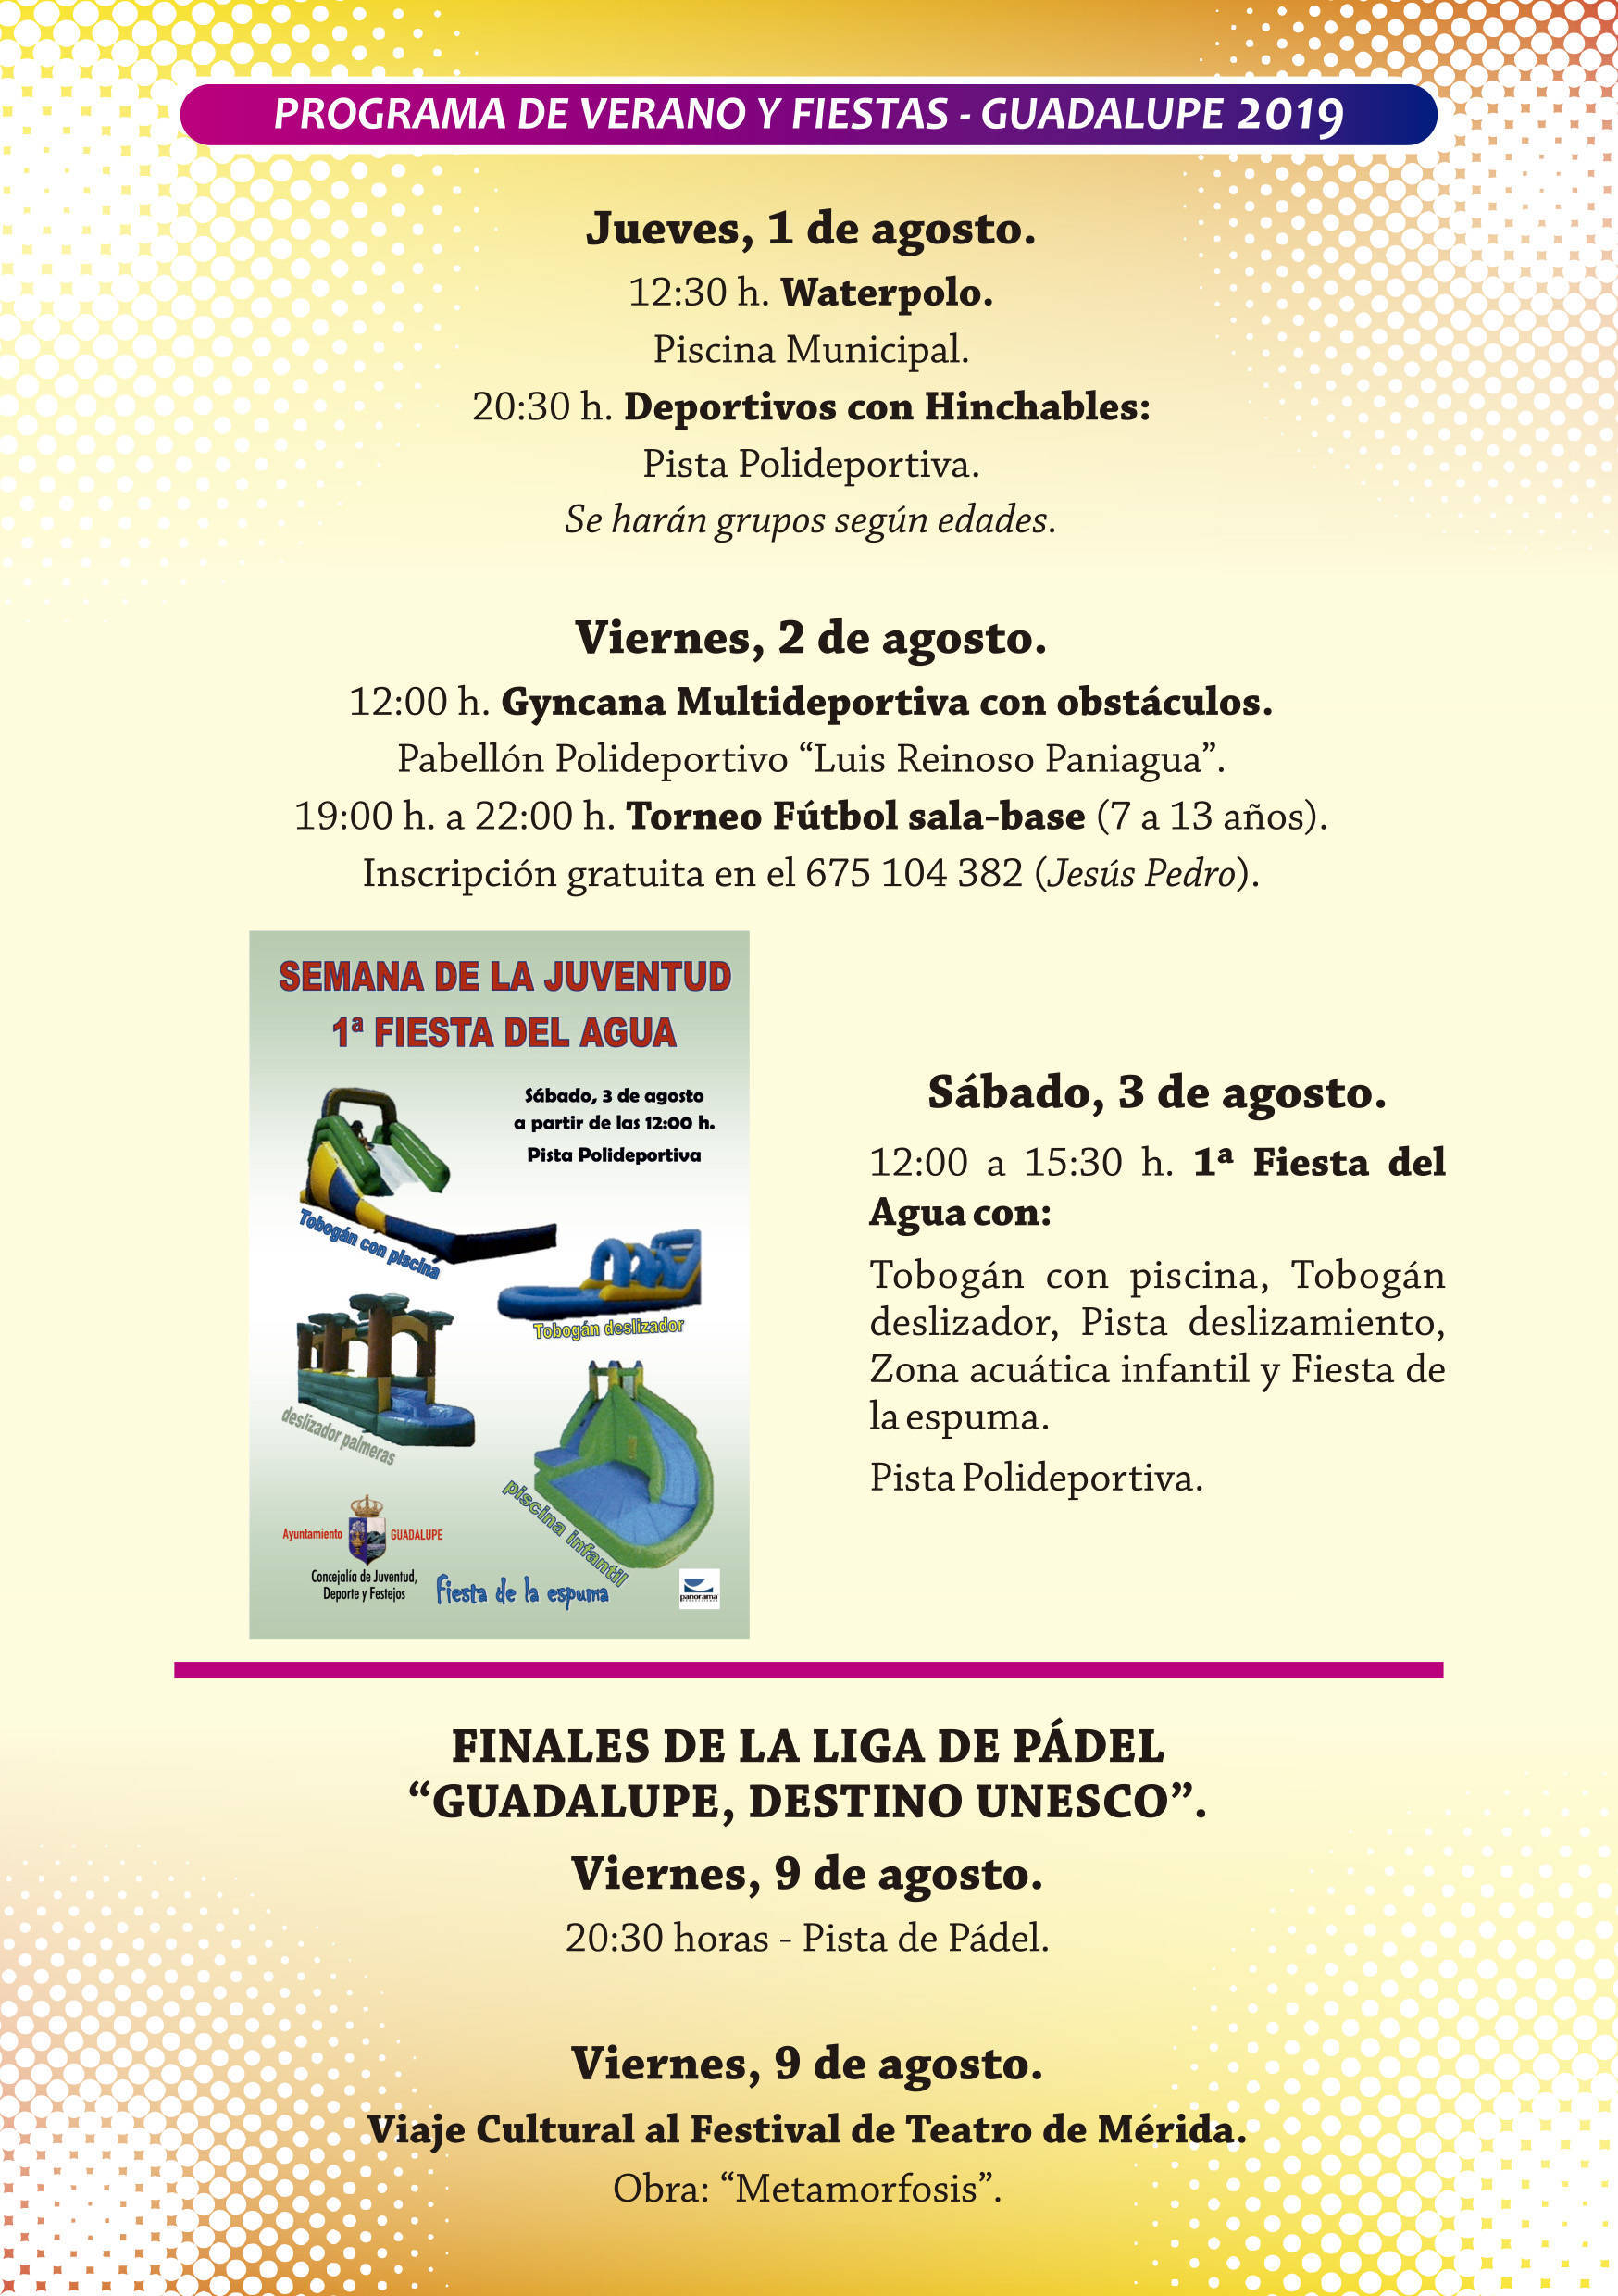 Programa de verano y fiestas 2019 - Guadalupe (Cáceres) 7